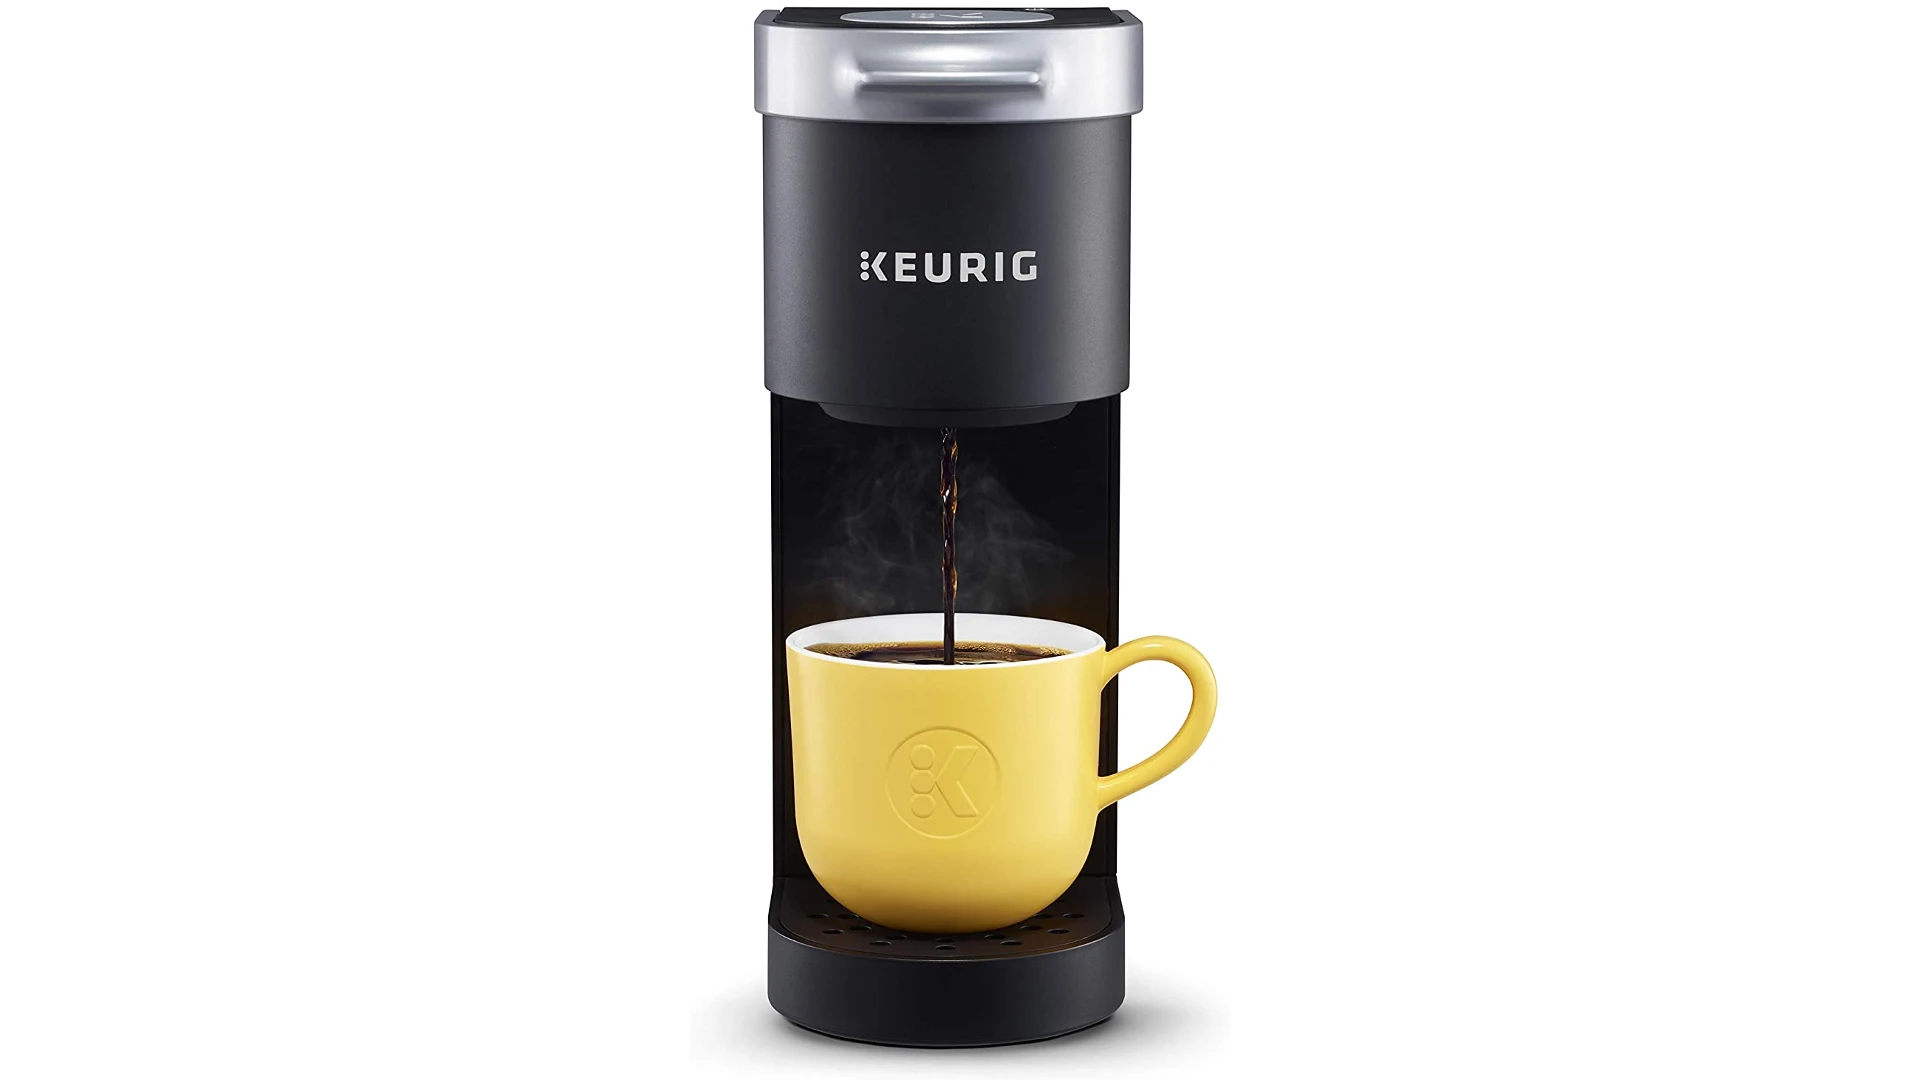 KEURIG K-MINI COFFEE MAKER